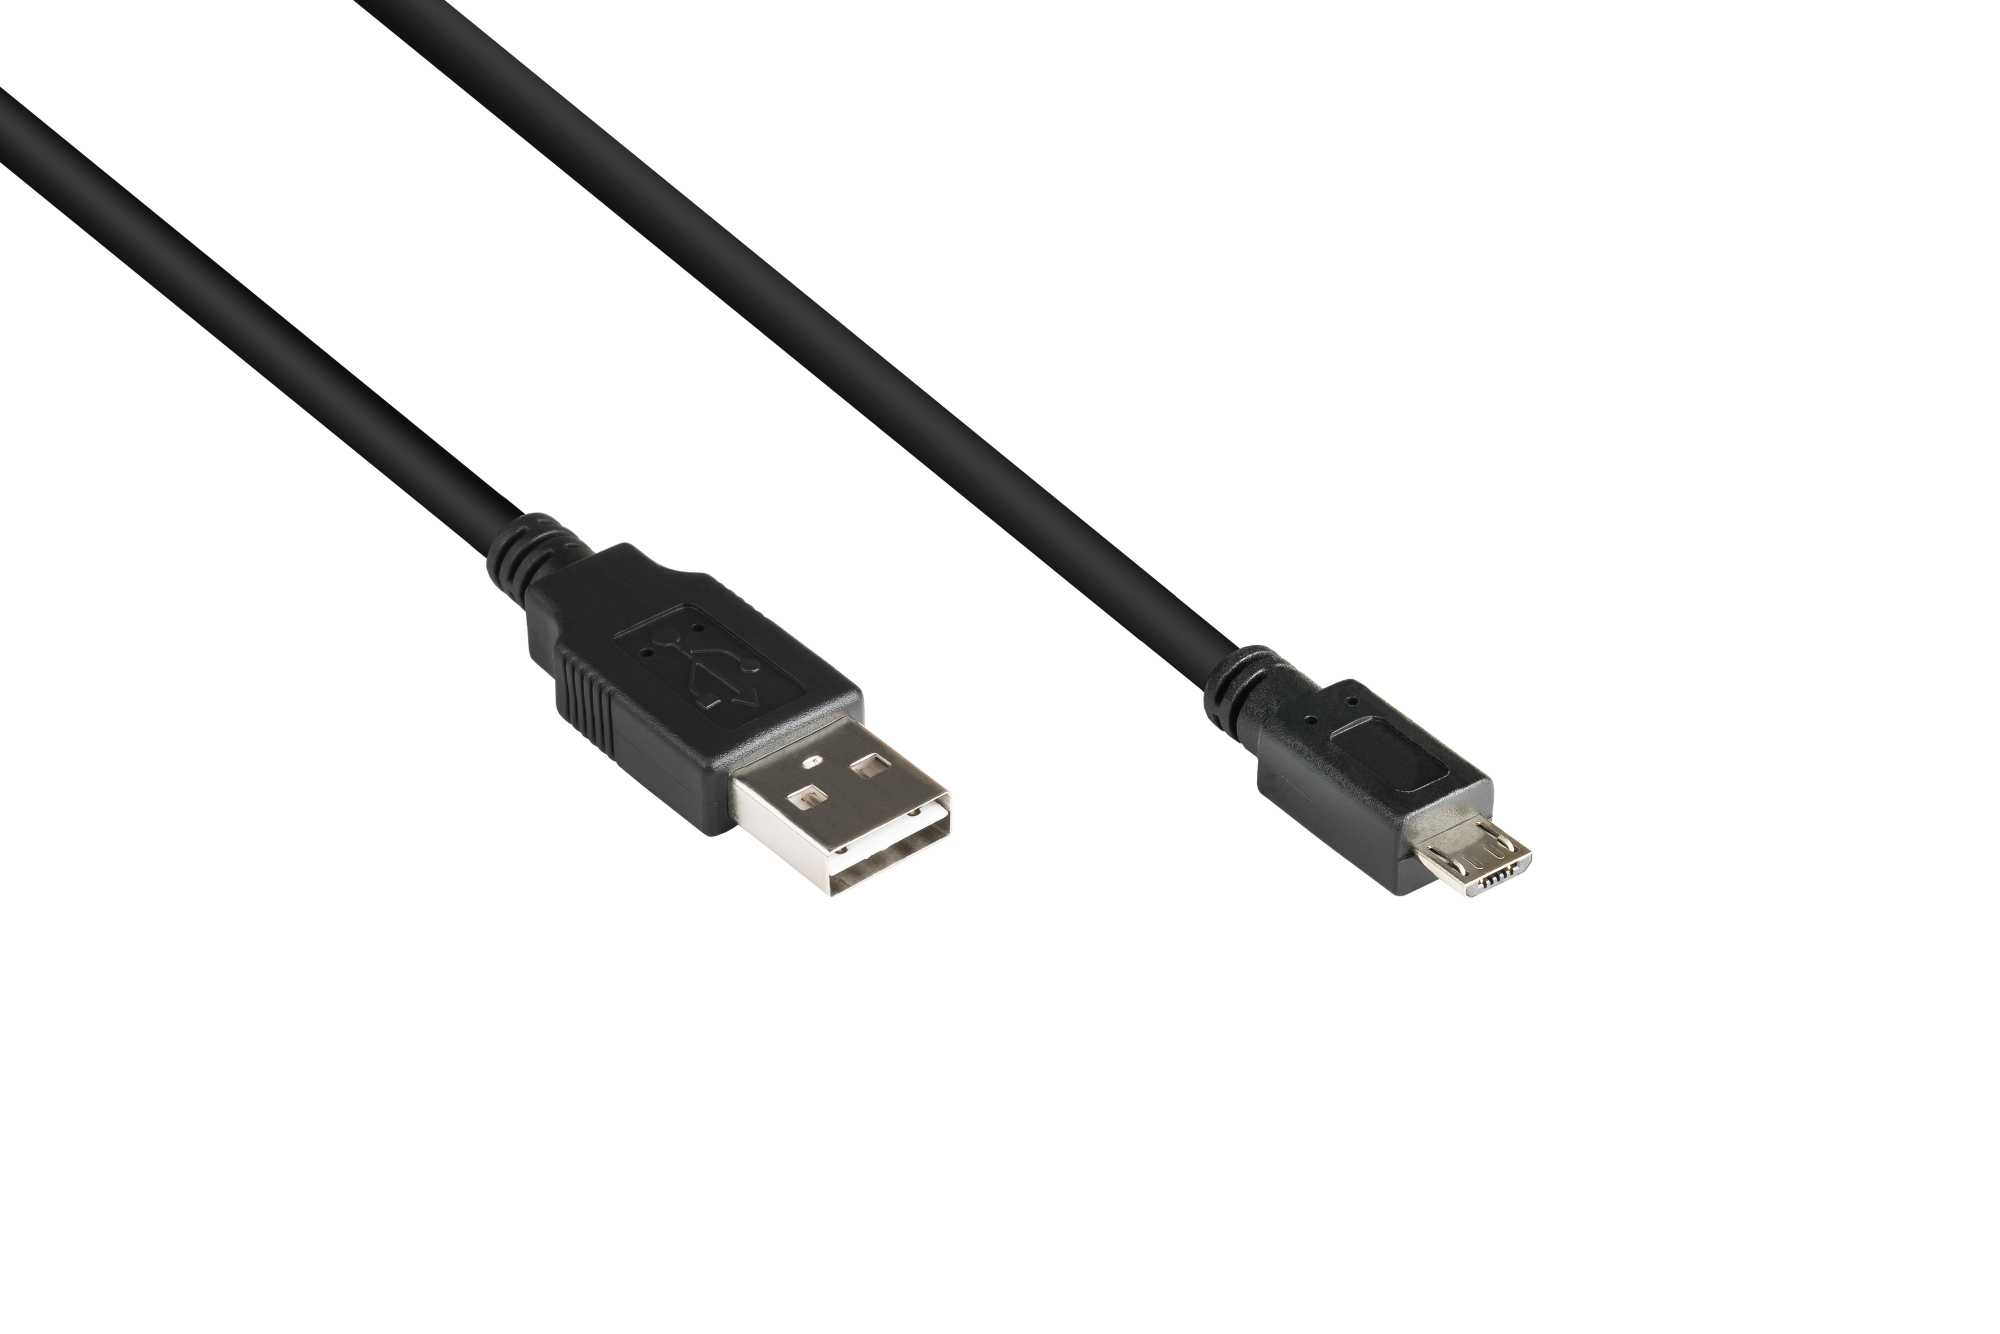 Anschlusskabel USB 2.0 EASY Stecker A an Stecker Micro B, schwarz, 2m